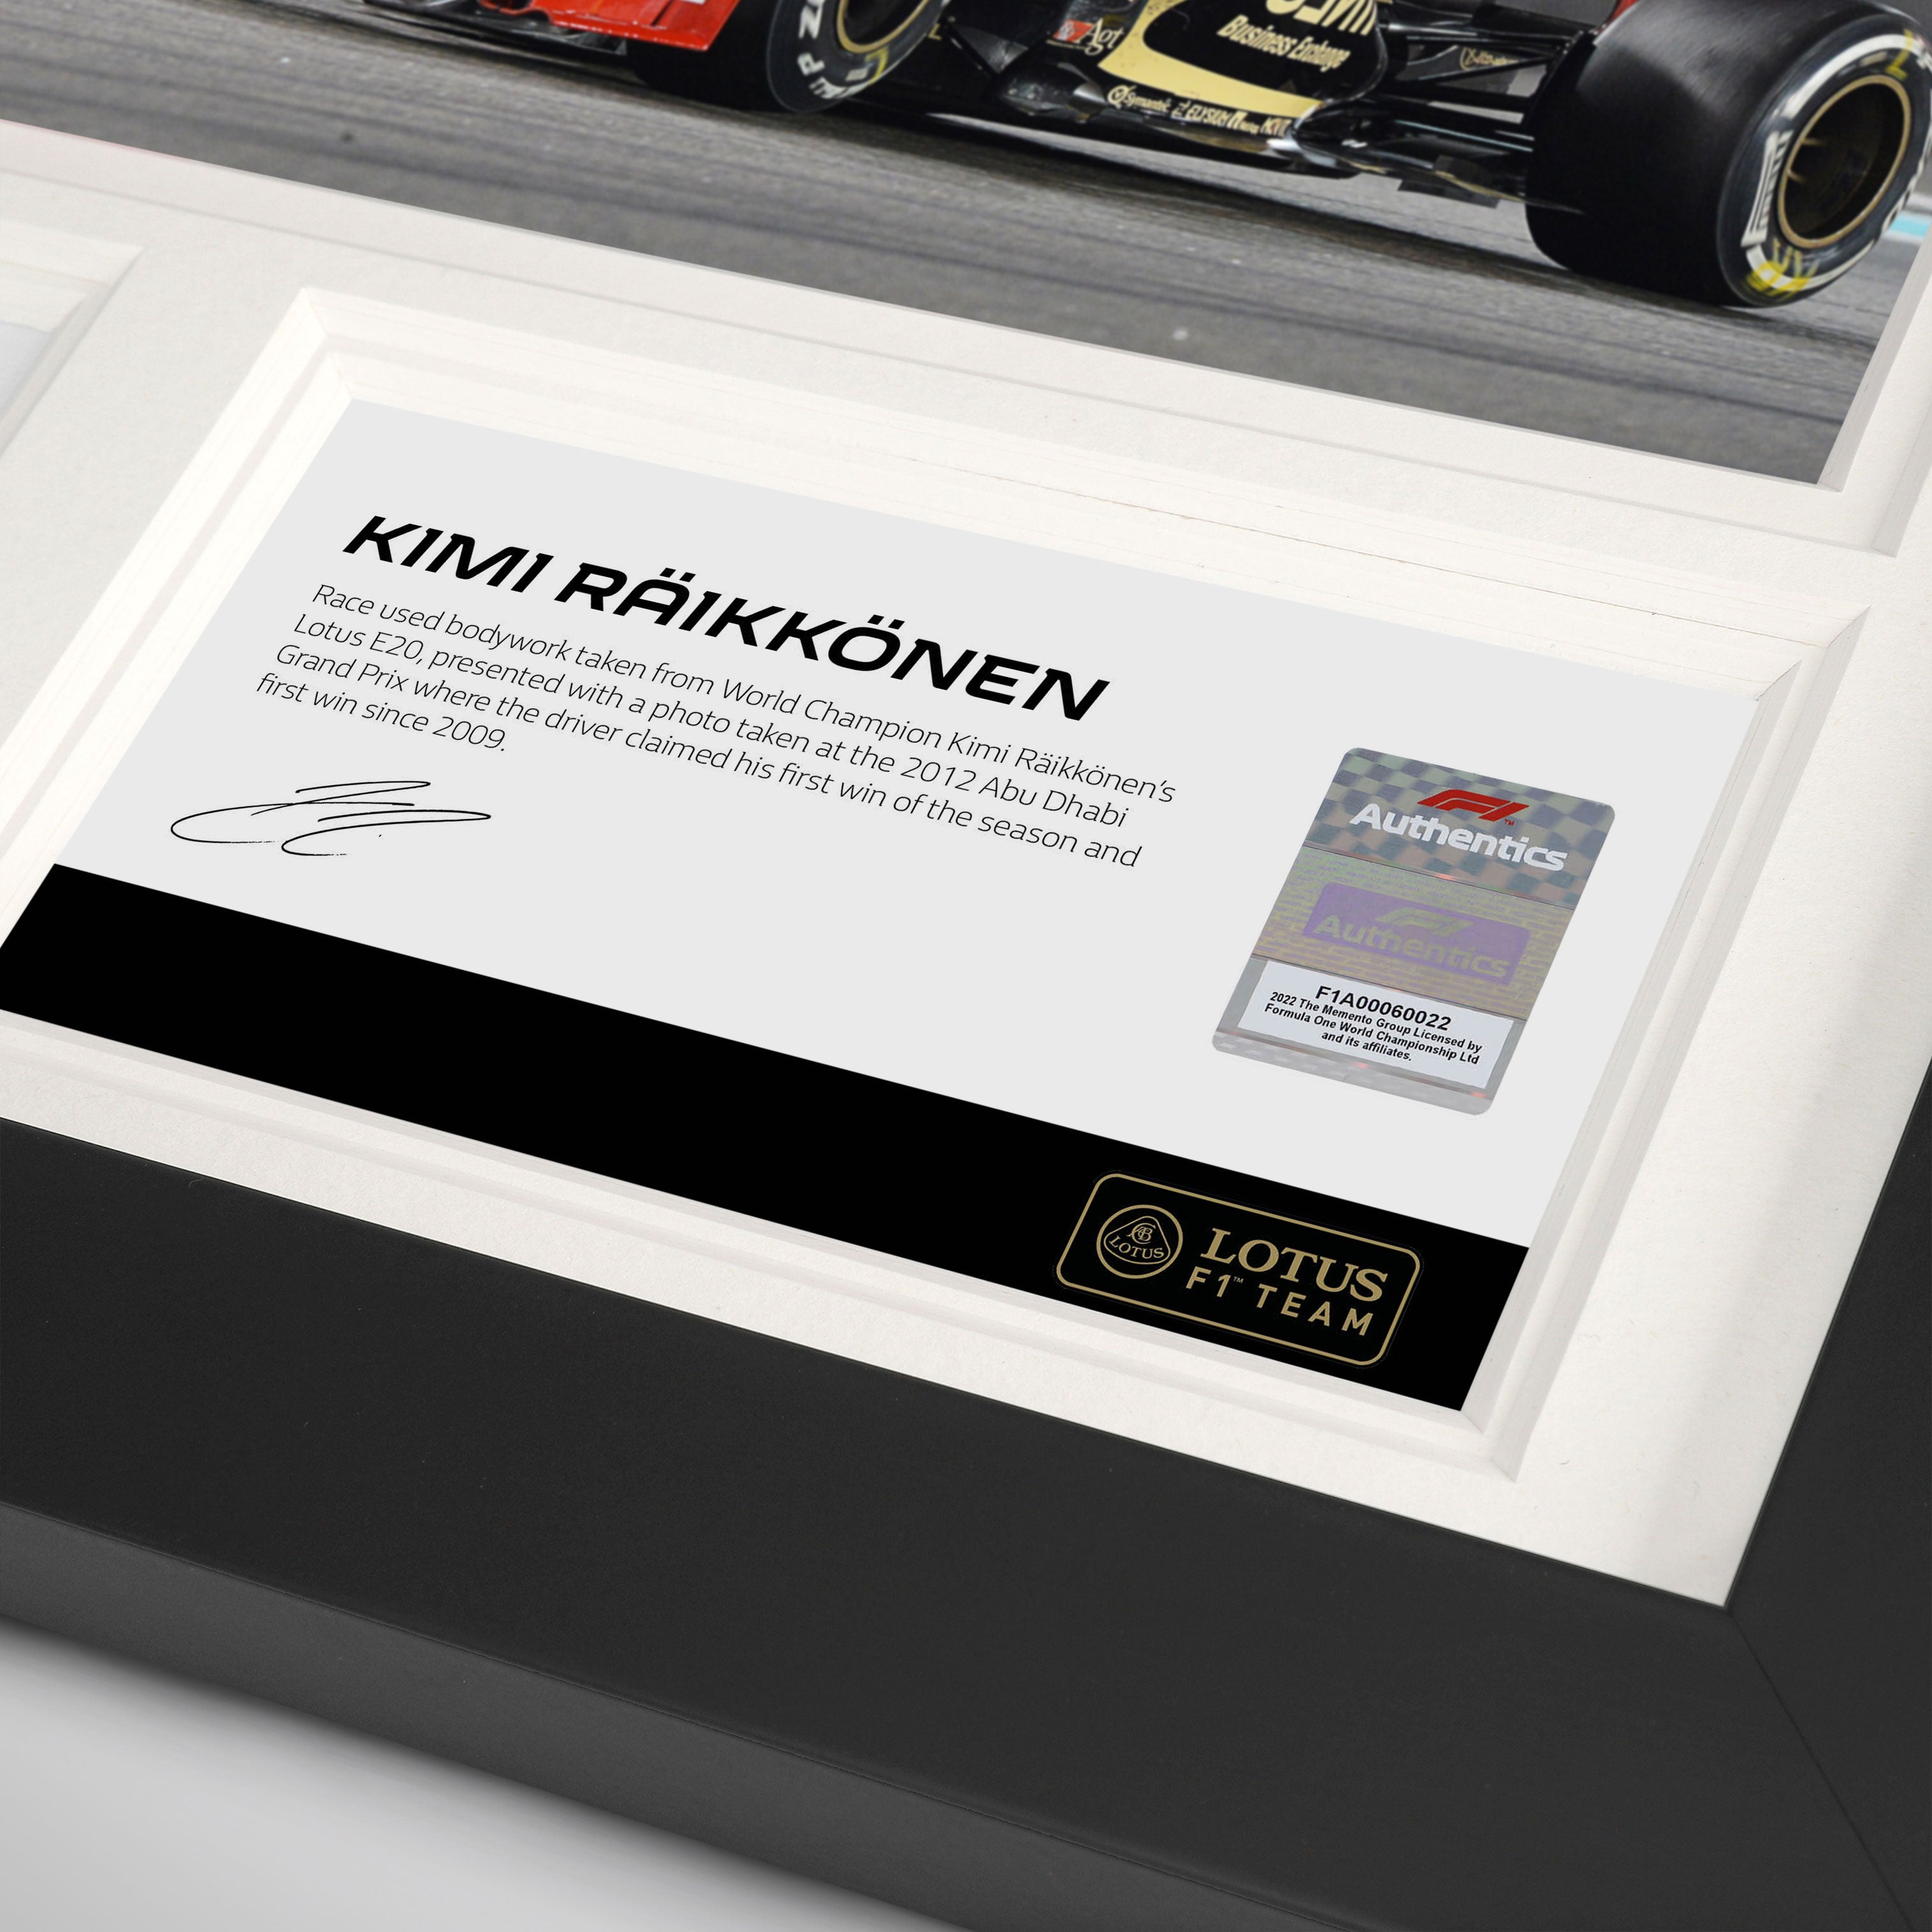 Kimi Räikkönen 2012 Bodywork & Photo – Abu Dhabi GP